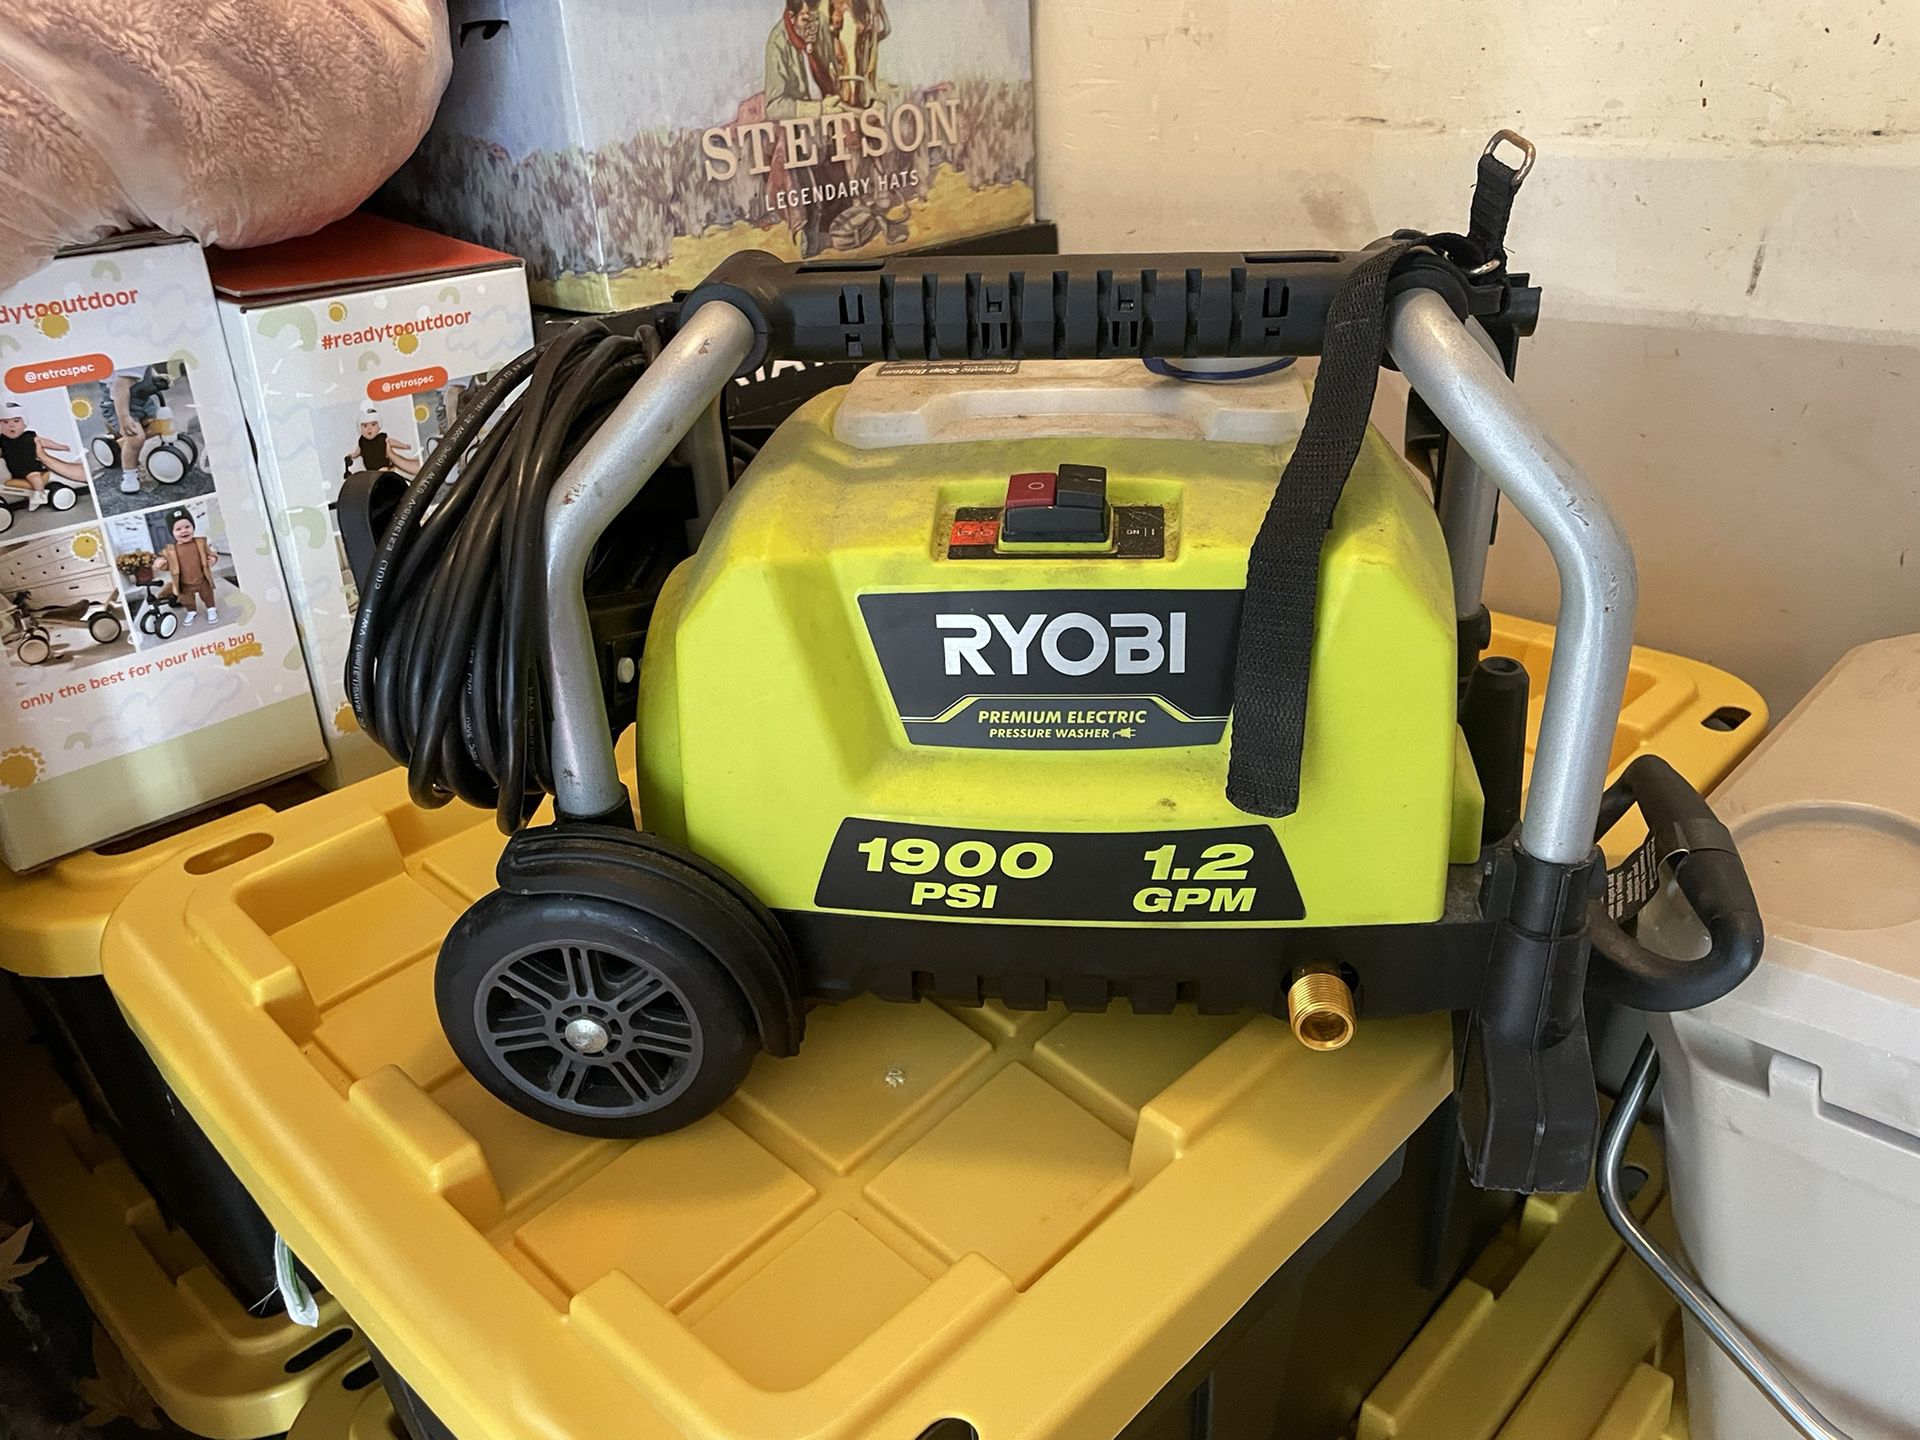 RYOBI electric Power Washer